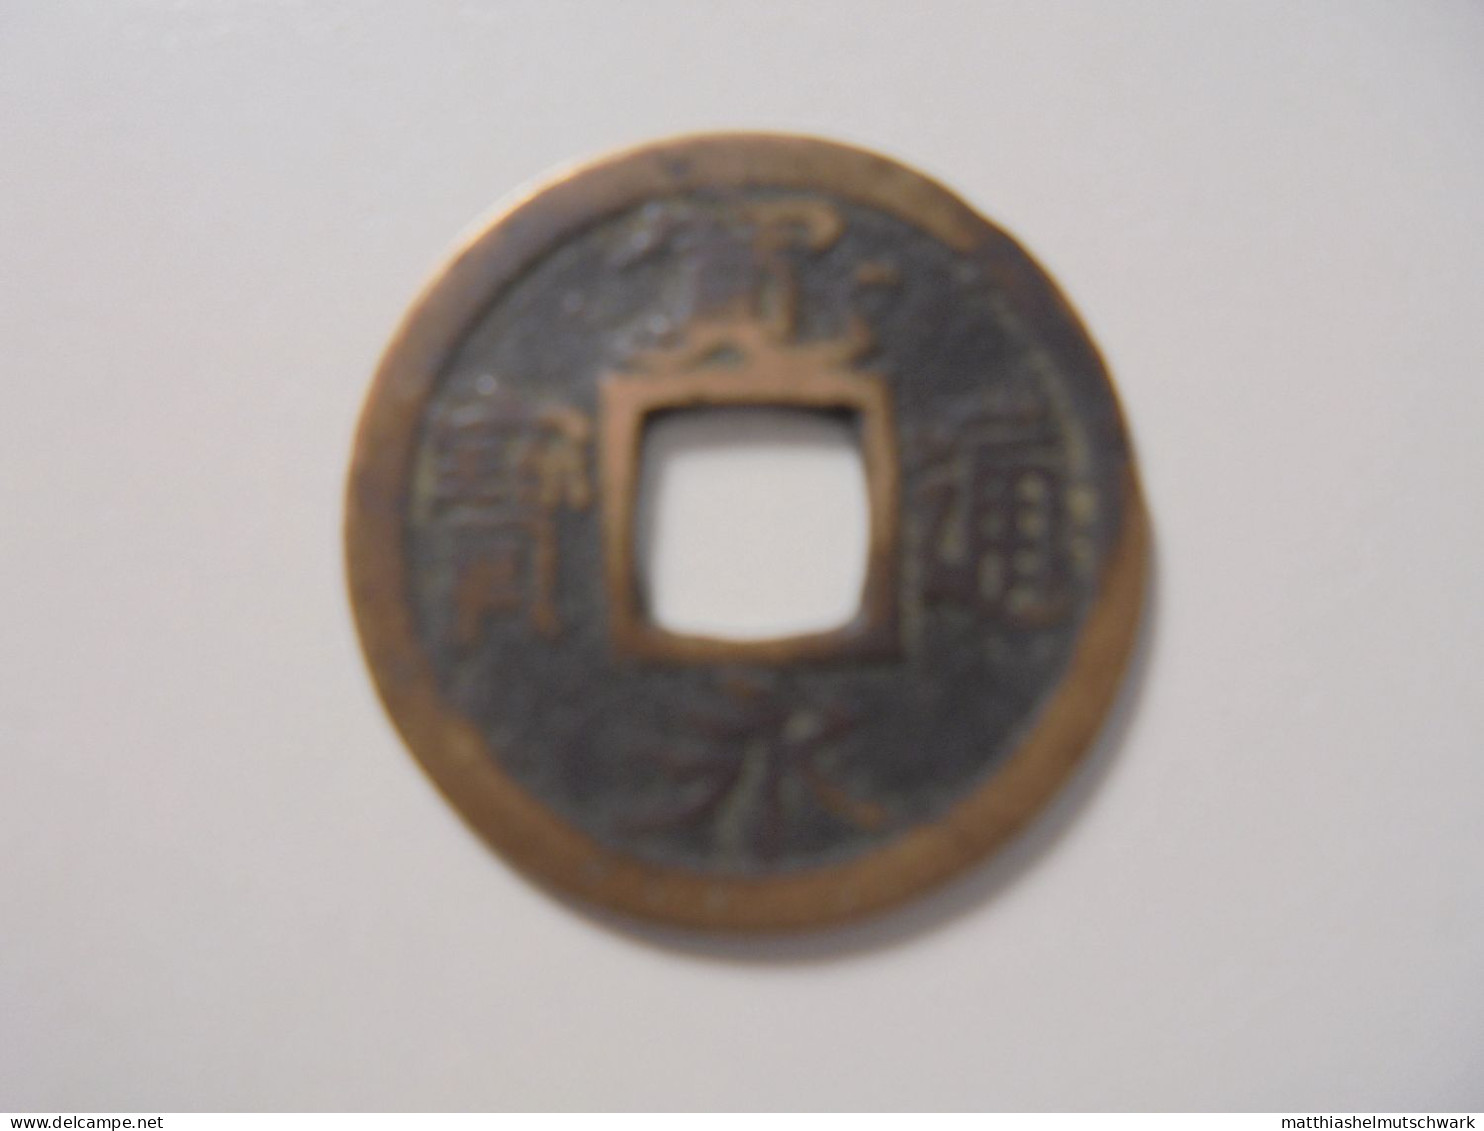 82x1 Mon 1736  		1 Mon, 1736 Kwan-Ei Tsu-Ho Kupfer, 3g, ø 24mm C# 1.5 · Umlaufmünzen Preis: € 5.82